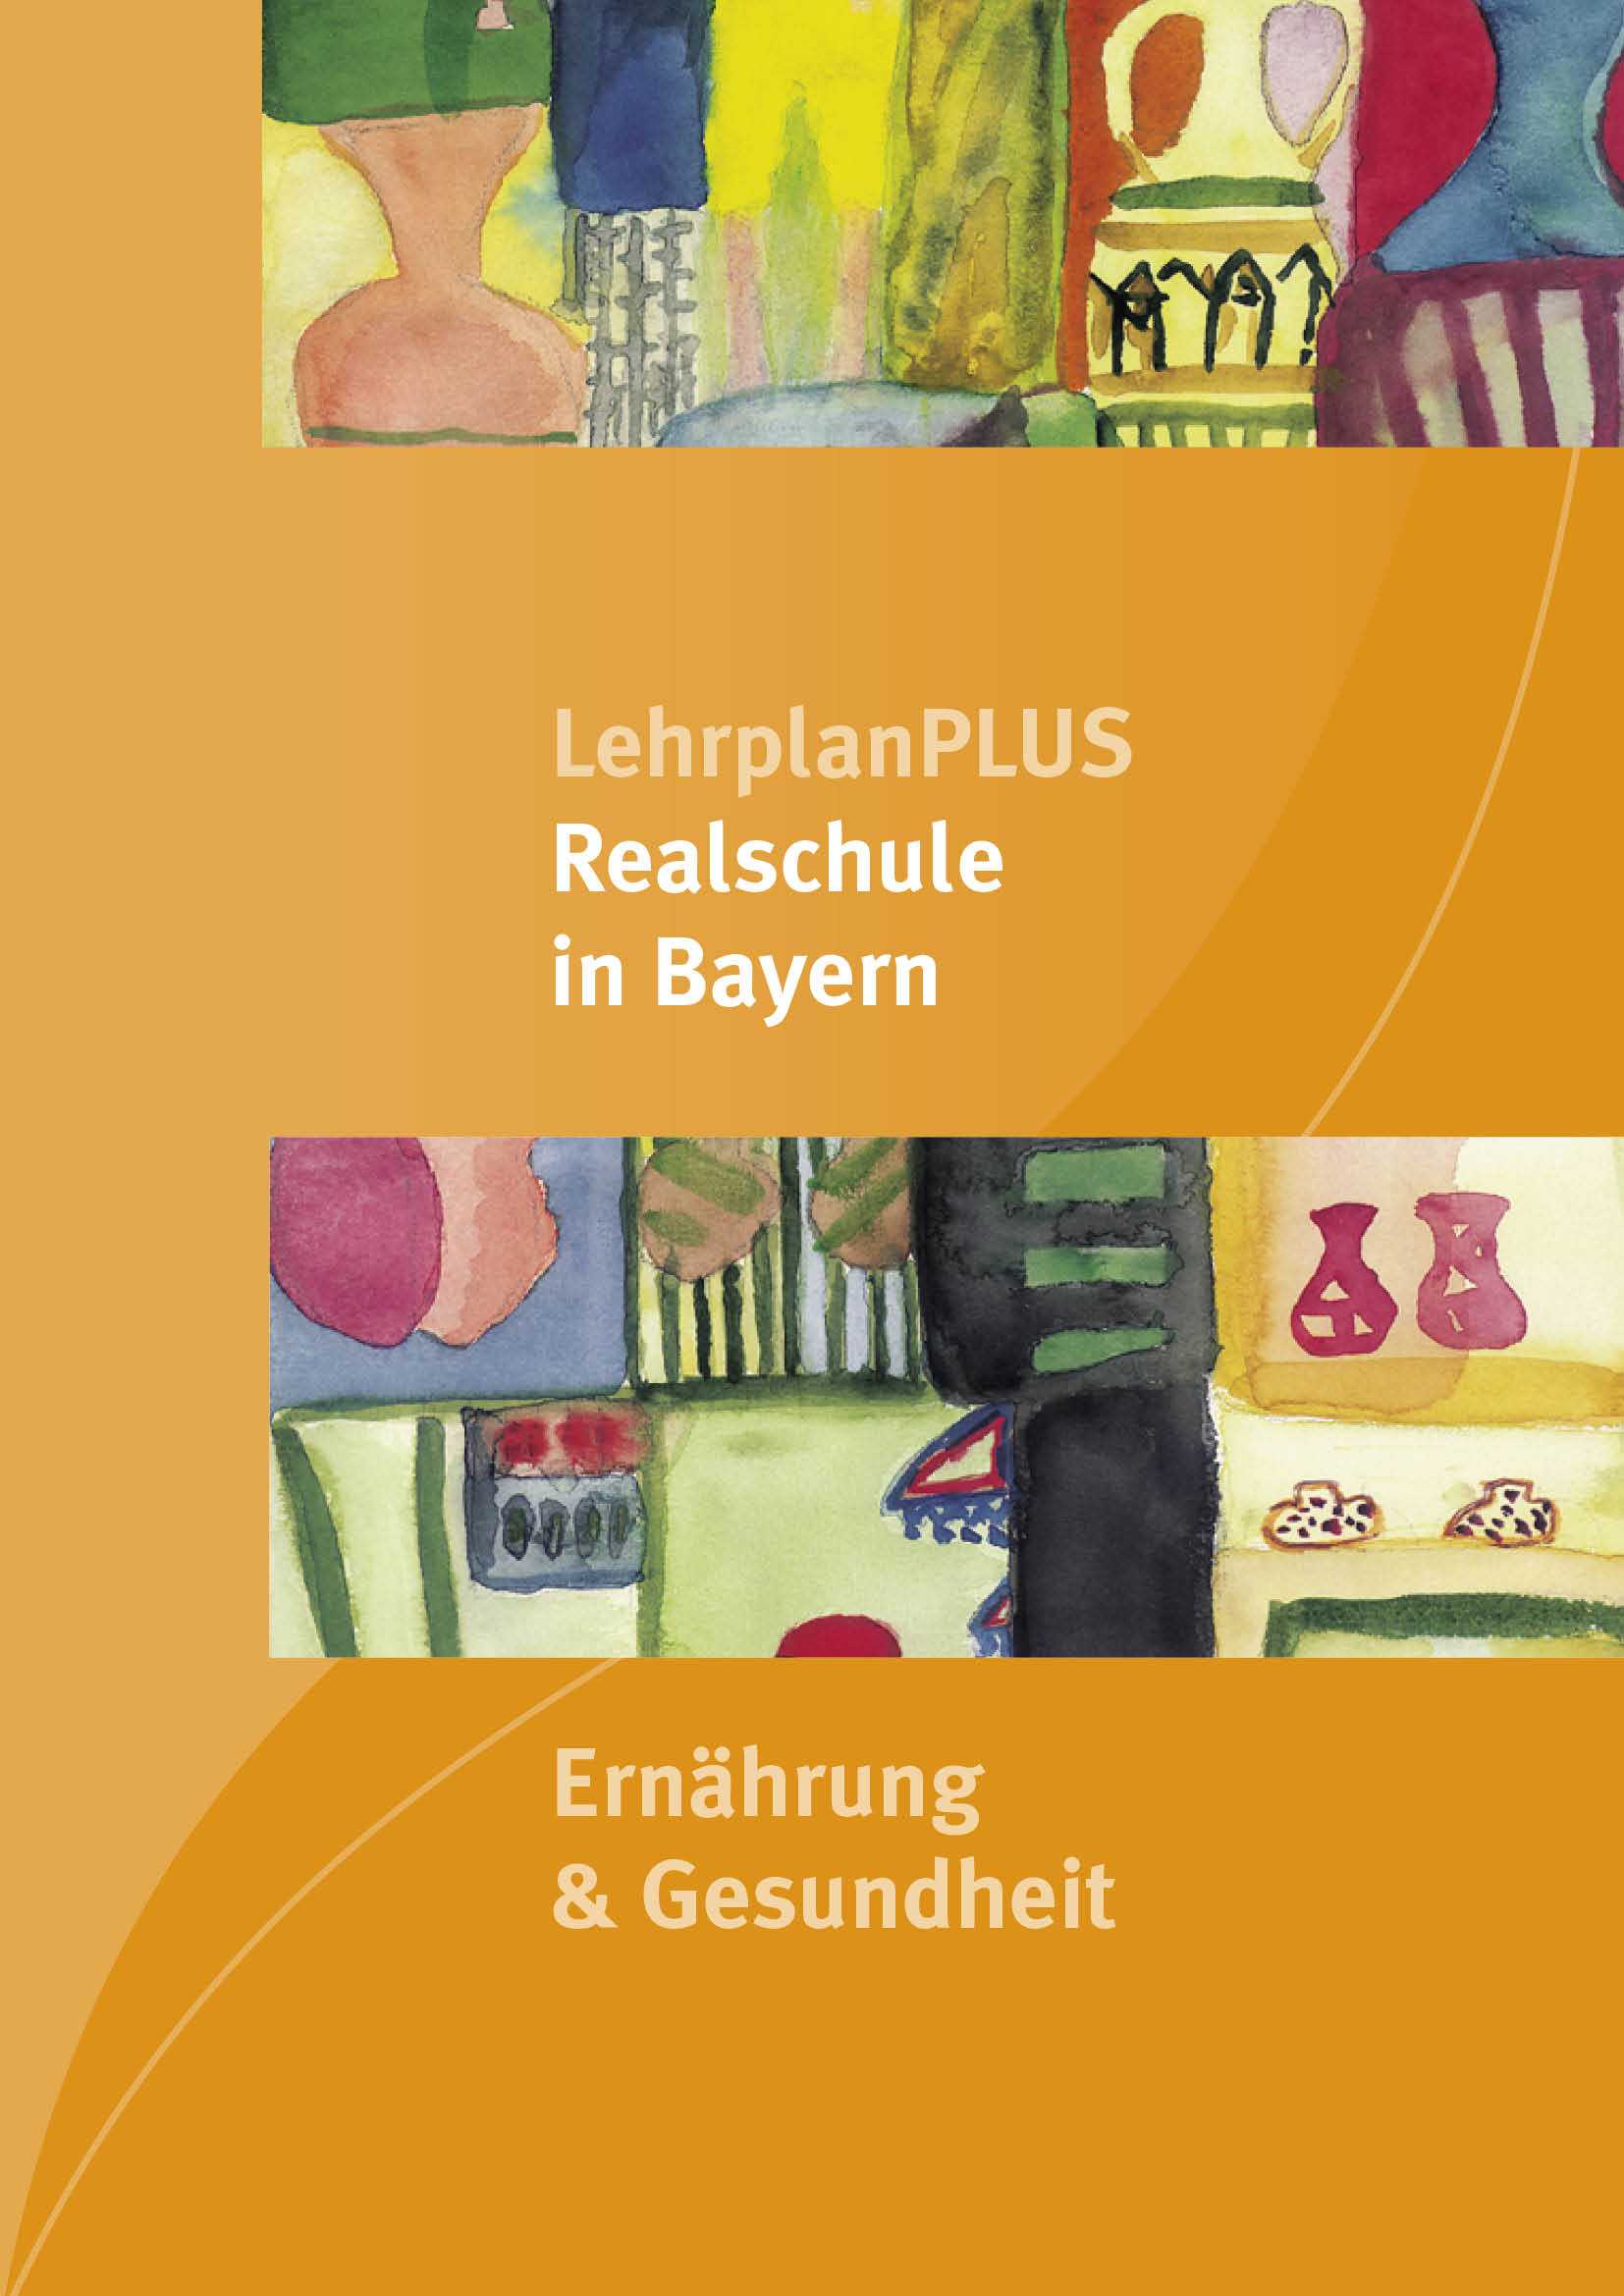 LehrplanPLUS Realschule in Bayern - Ernährung & Gesundheit